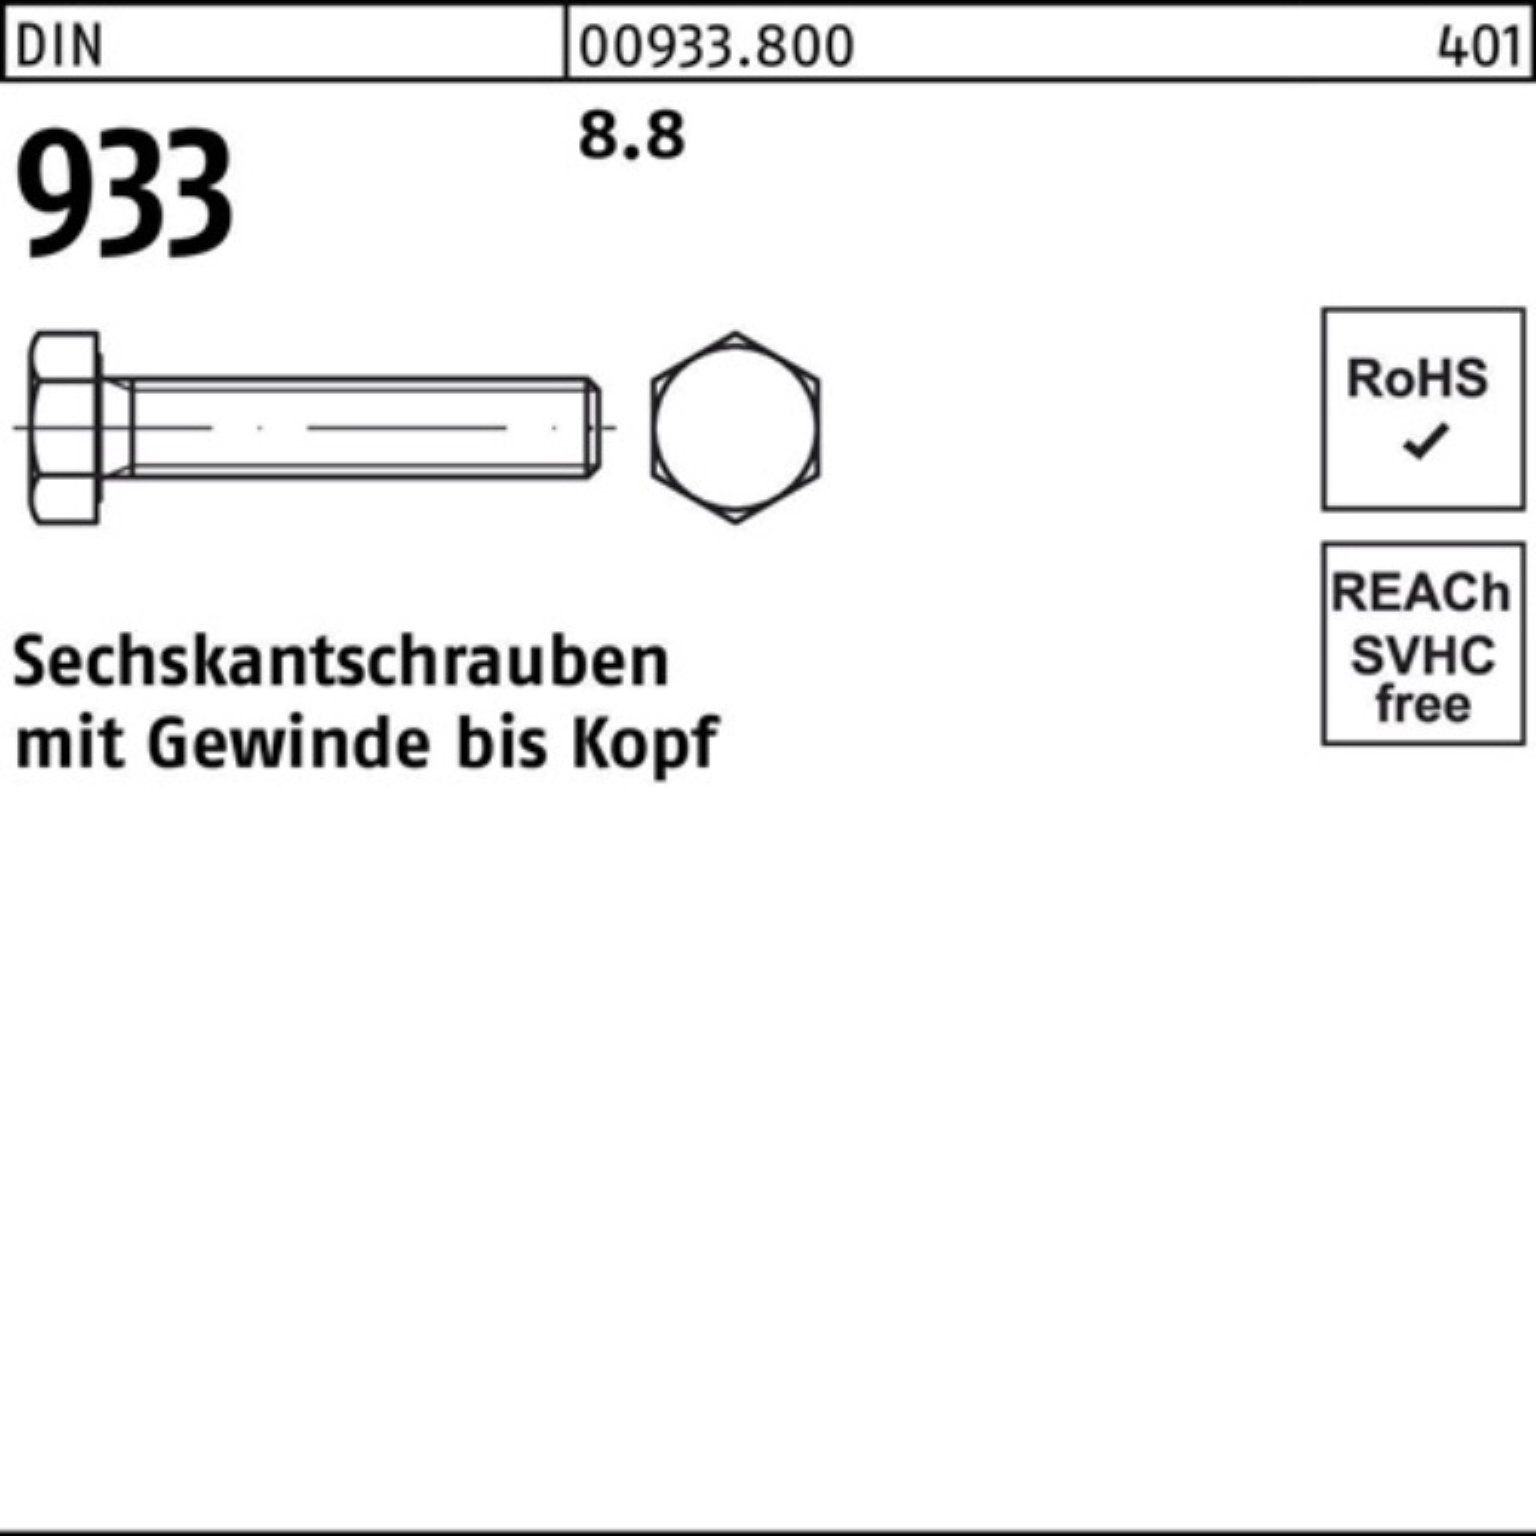 Reyher Sechskantschraube 500er 500 DIN Sechskantschraube DIN VG 8.8 933 Stück Pack 14 933 M4x